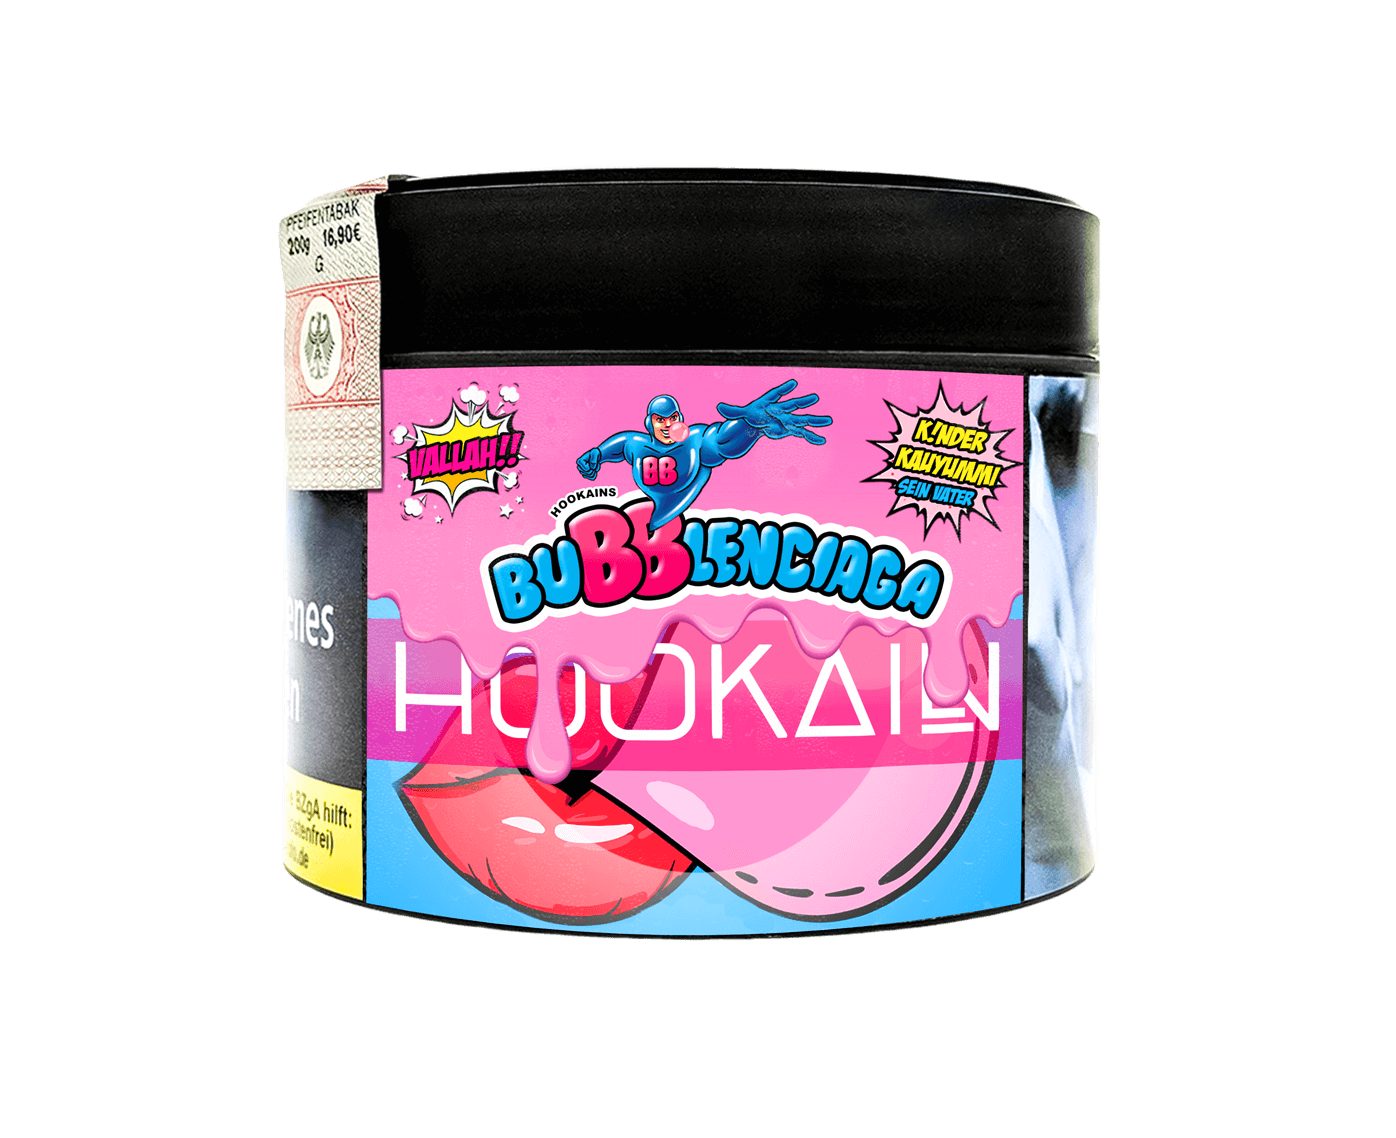 Hookain Tabak 200g Bubblenciaga